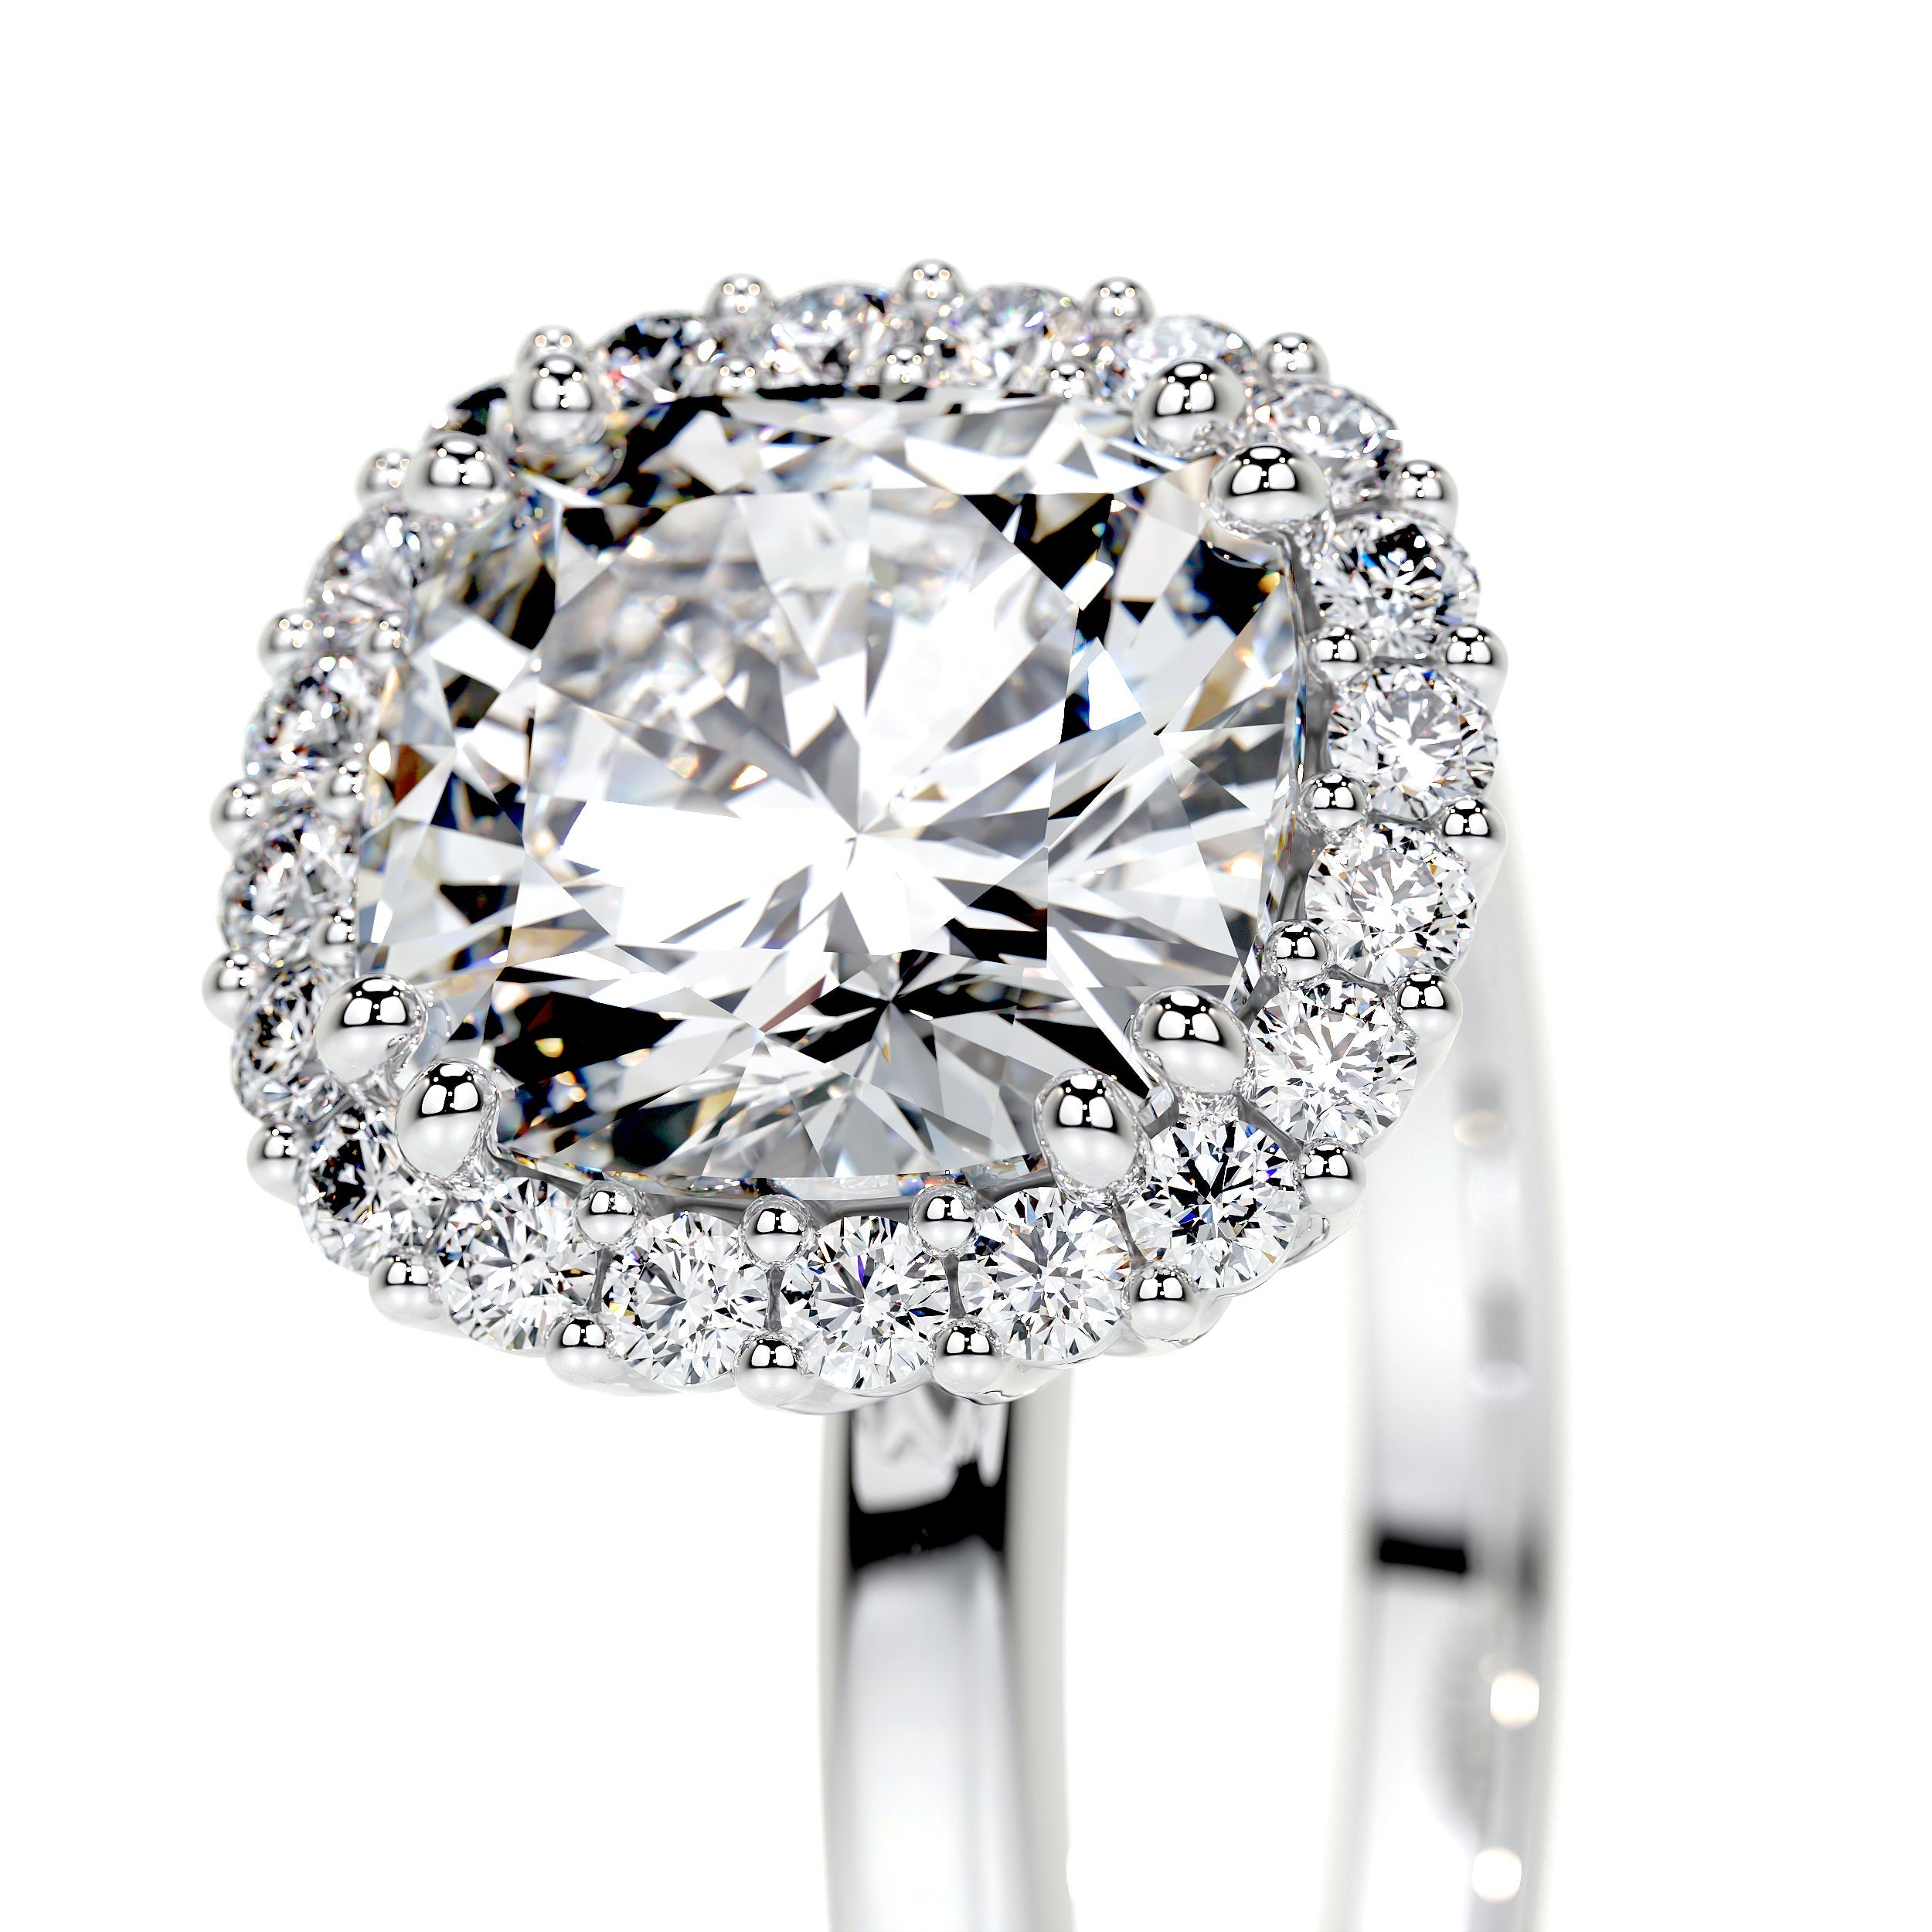 Bailey Lab Grown Diamond Ring   (2.25 Carat) -14K White Gold